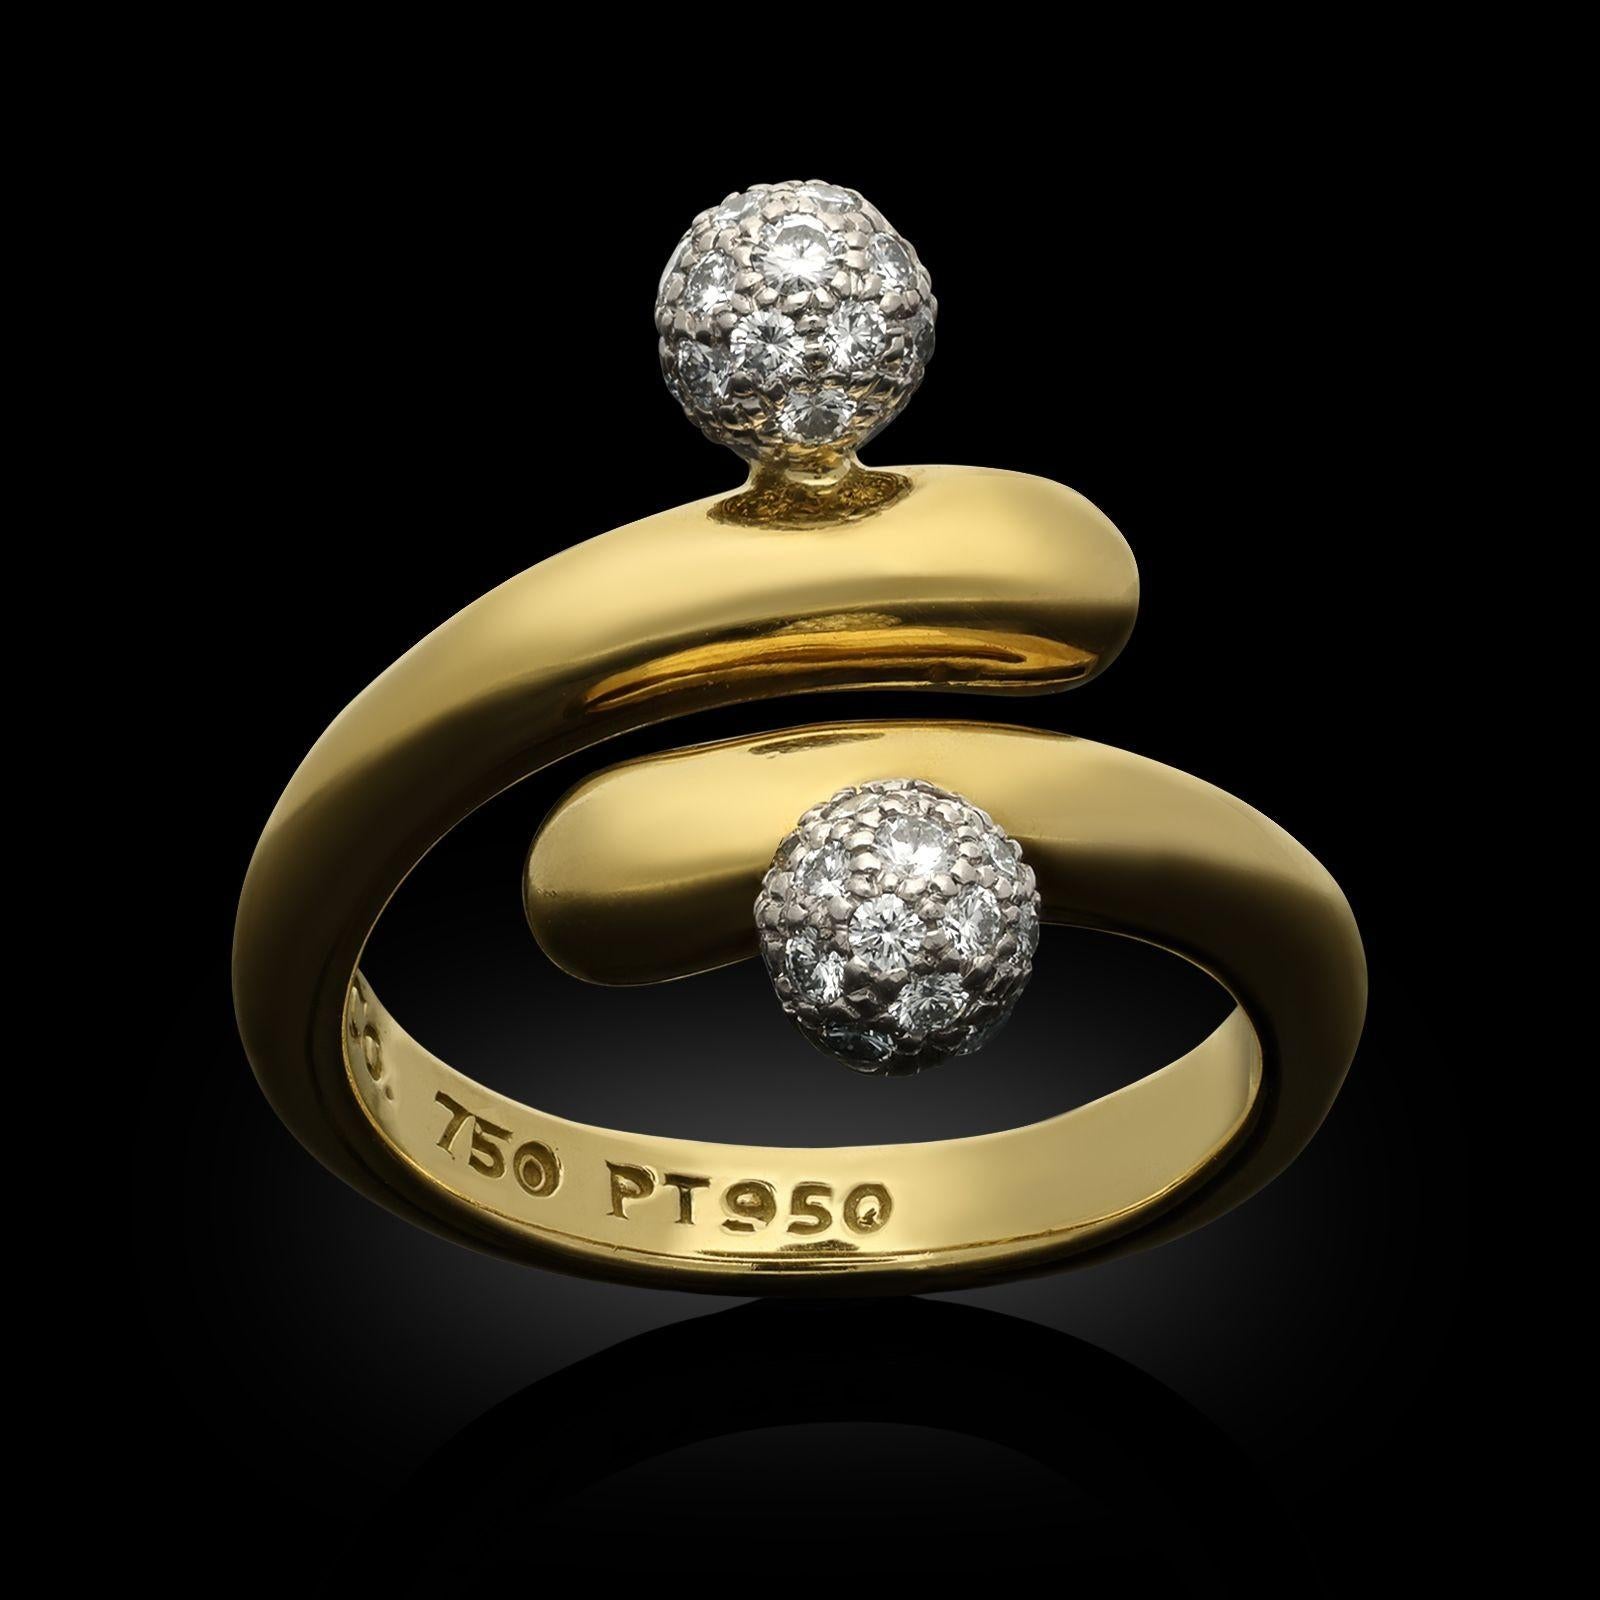 Bague croisée en or jaune 18ct et diamants de Tiffany & Co. vers 1980. La bague est conçue comme un croisement stylisé avec deux accents sphériques tridimensionnels en platine sertis de diamants pavés sur la bande d'or jaune qui se